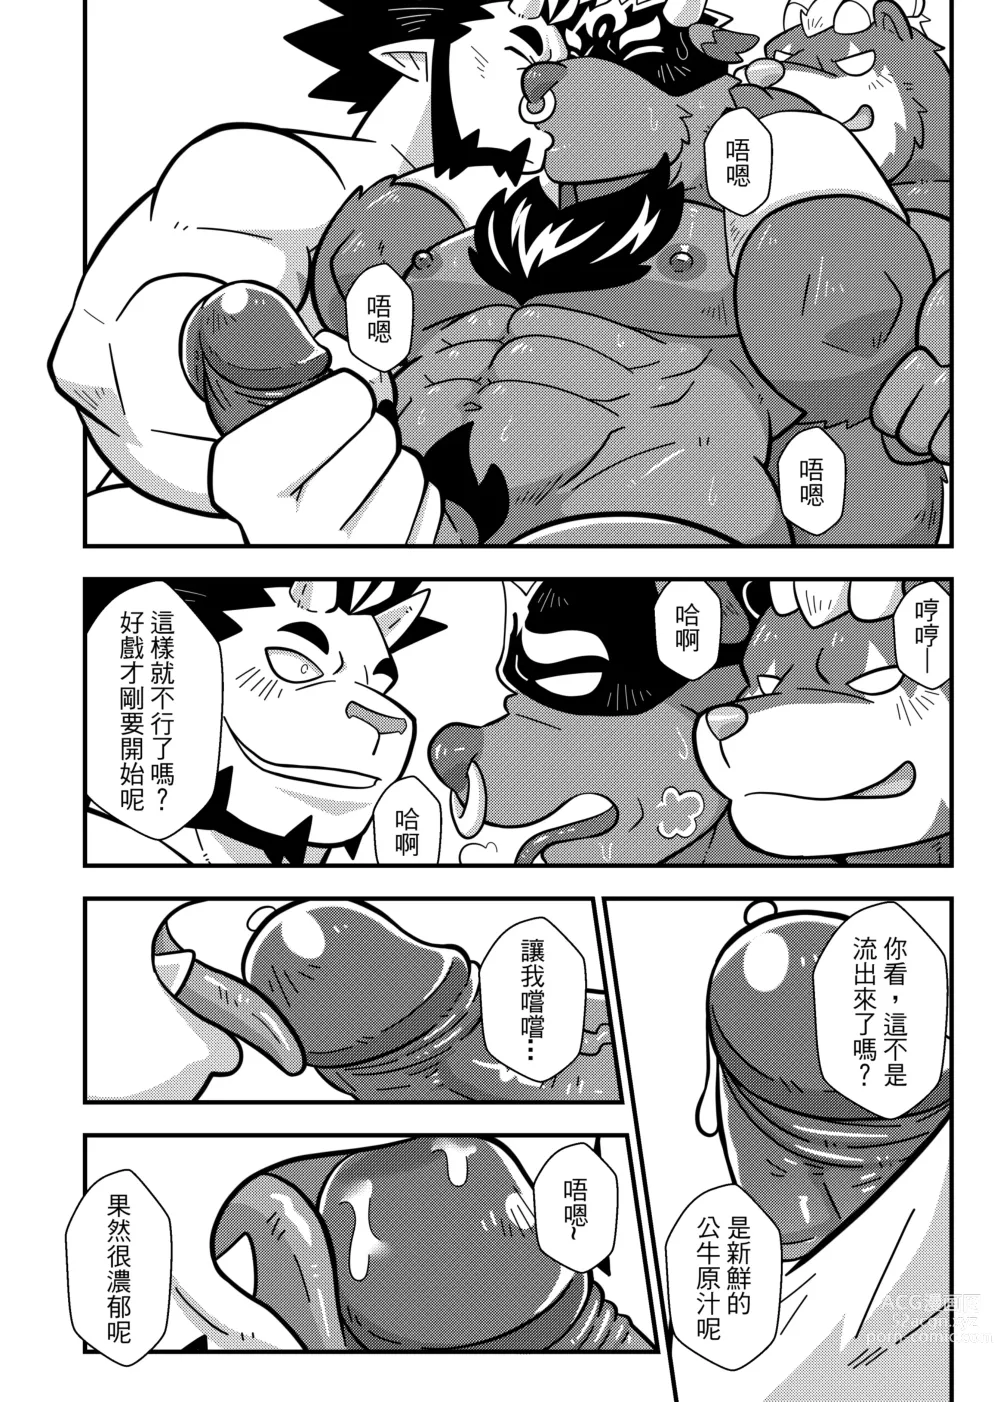 Page 43 of doujinshi 勇者的大小只有魔王塞得下4